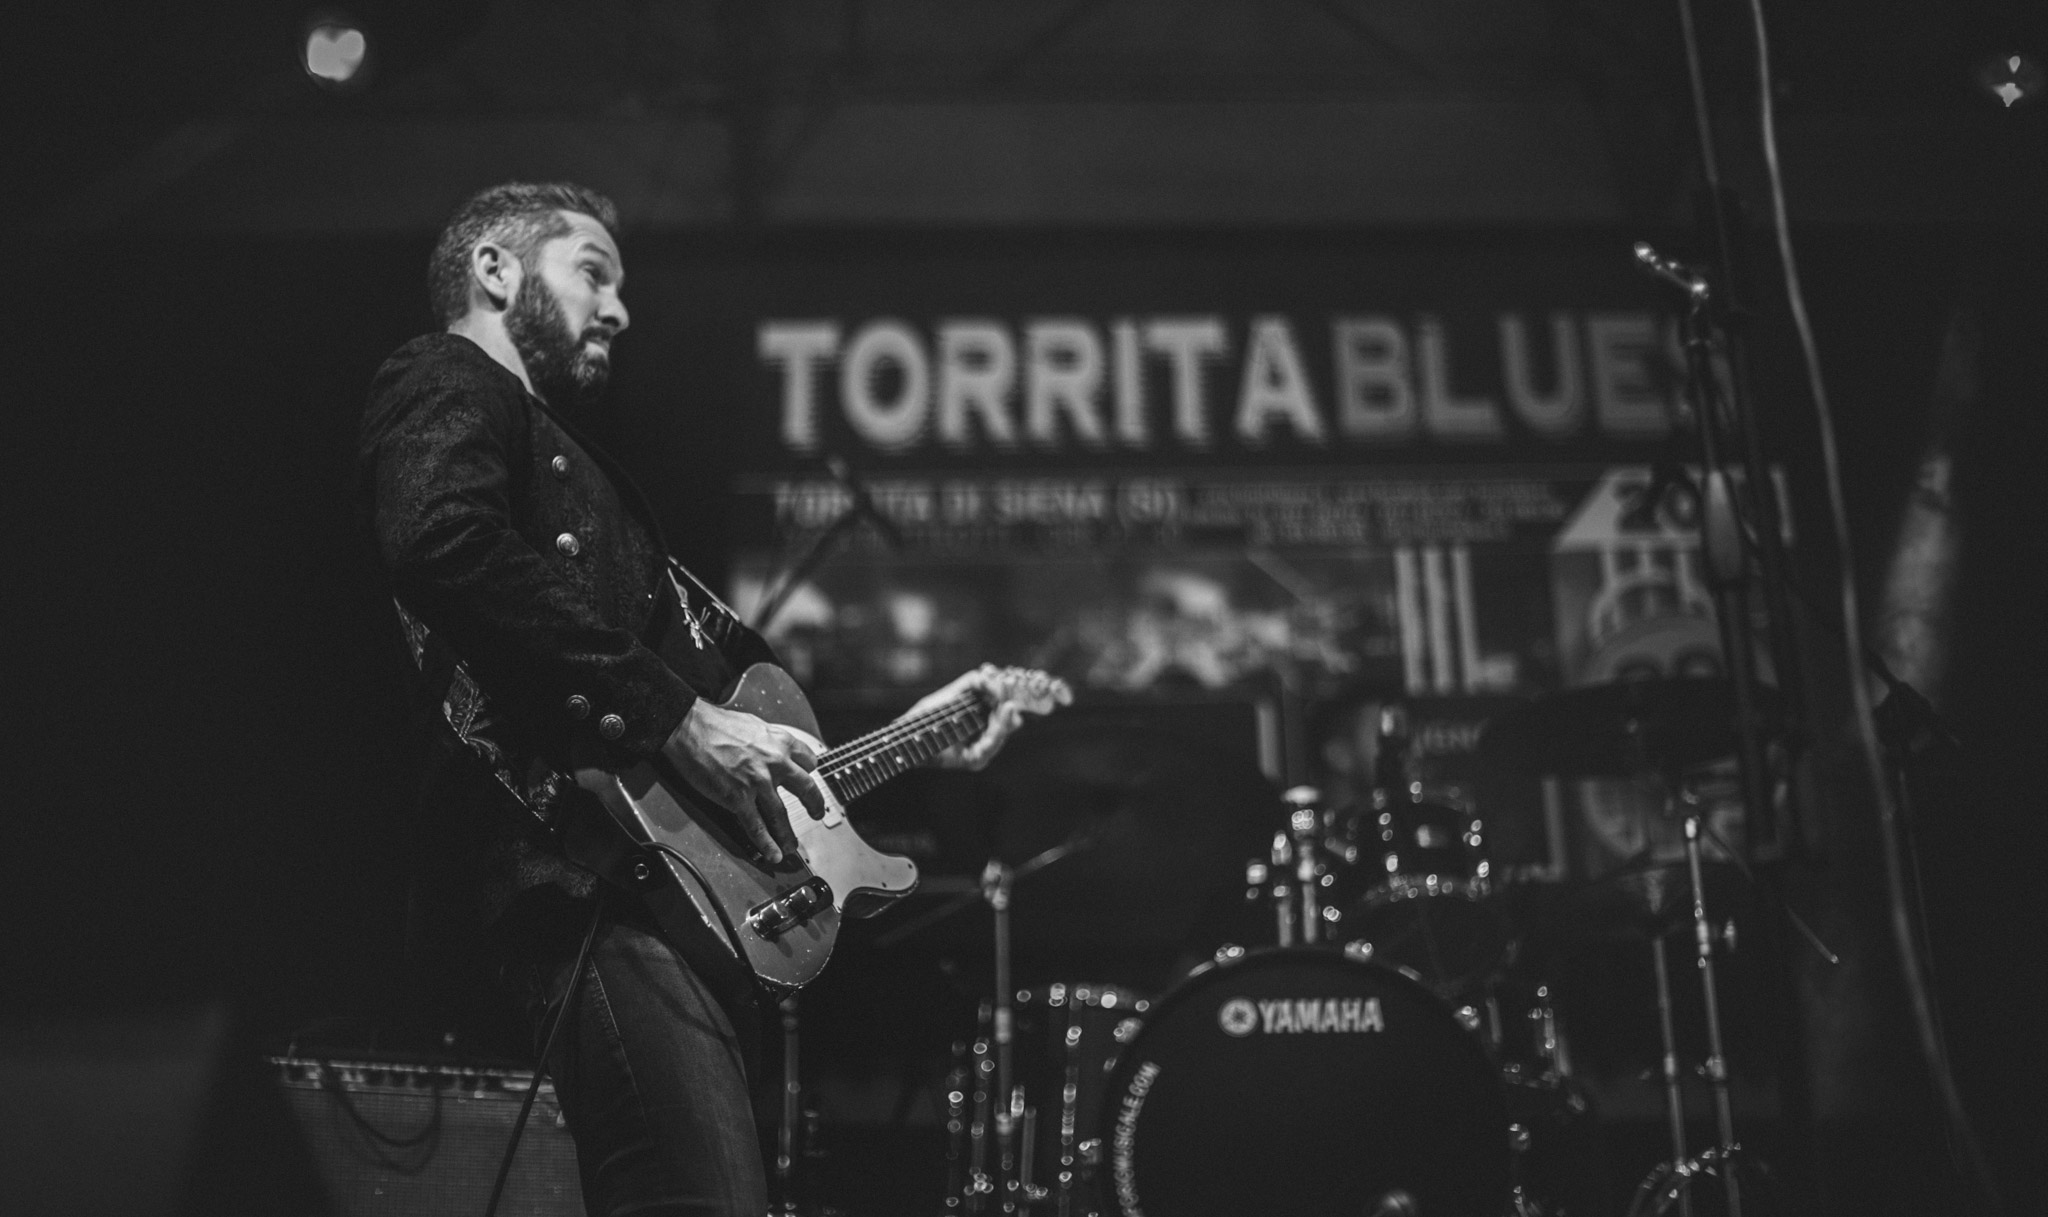 The Fullertones live at Torrita Blues